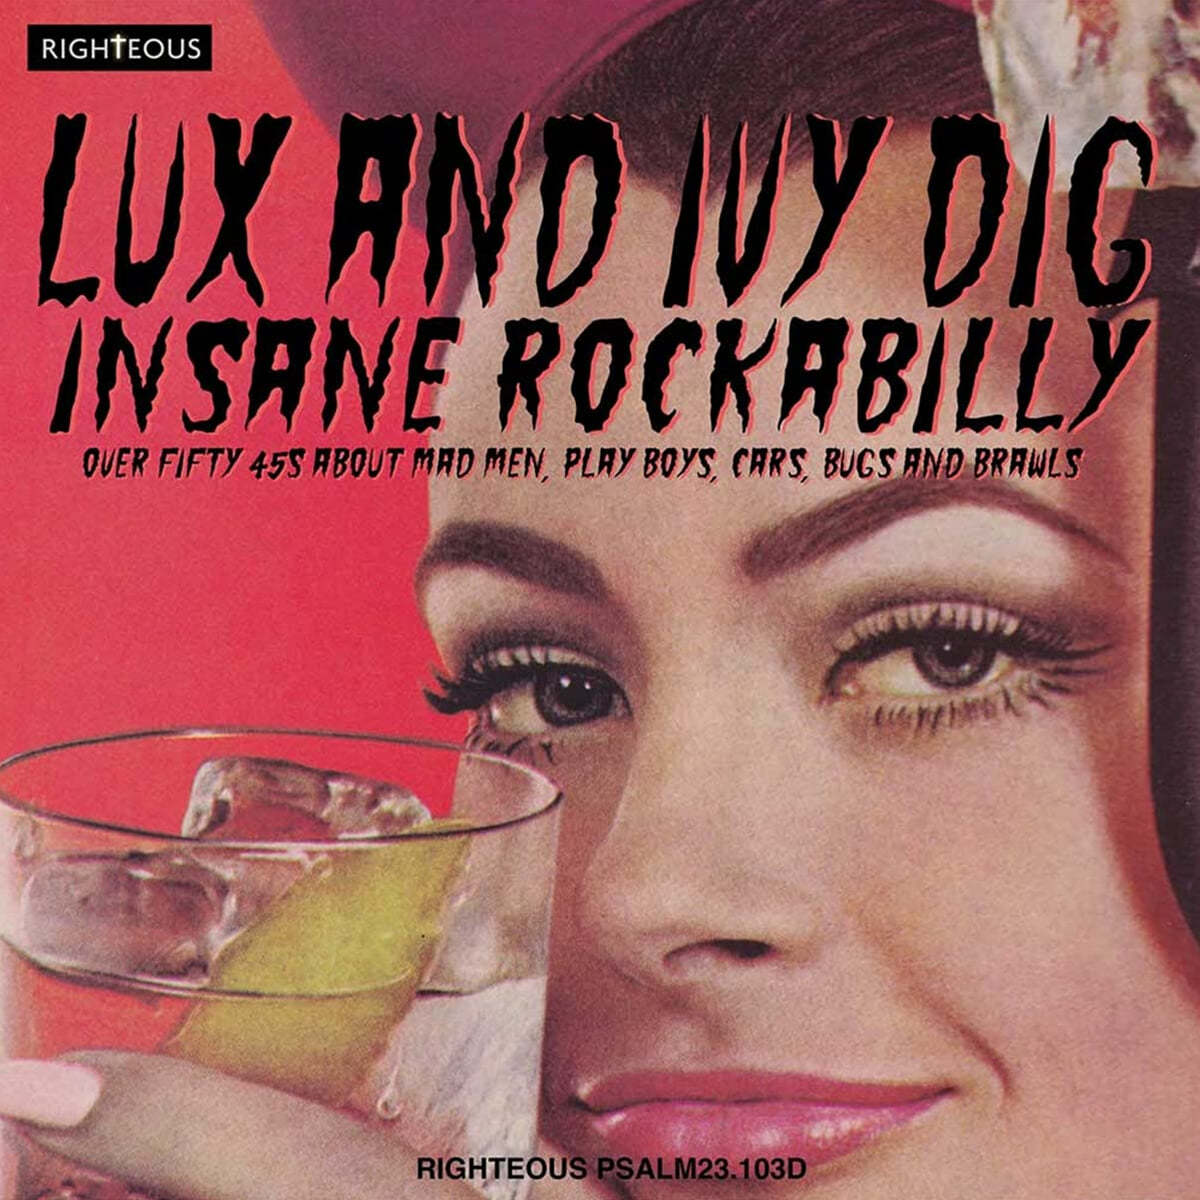 룩스 앤 아이비 딕 인세인 로커빌리티 (Lux And Ivy Dig Insane Rockabilly : Over Fifty 45s About Mad Men, Play Boys, Cars, Bugs And Brawls)